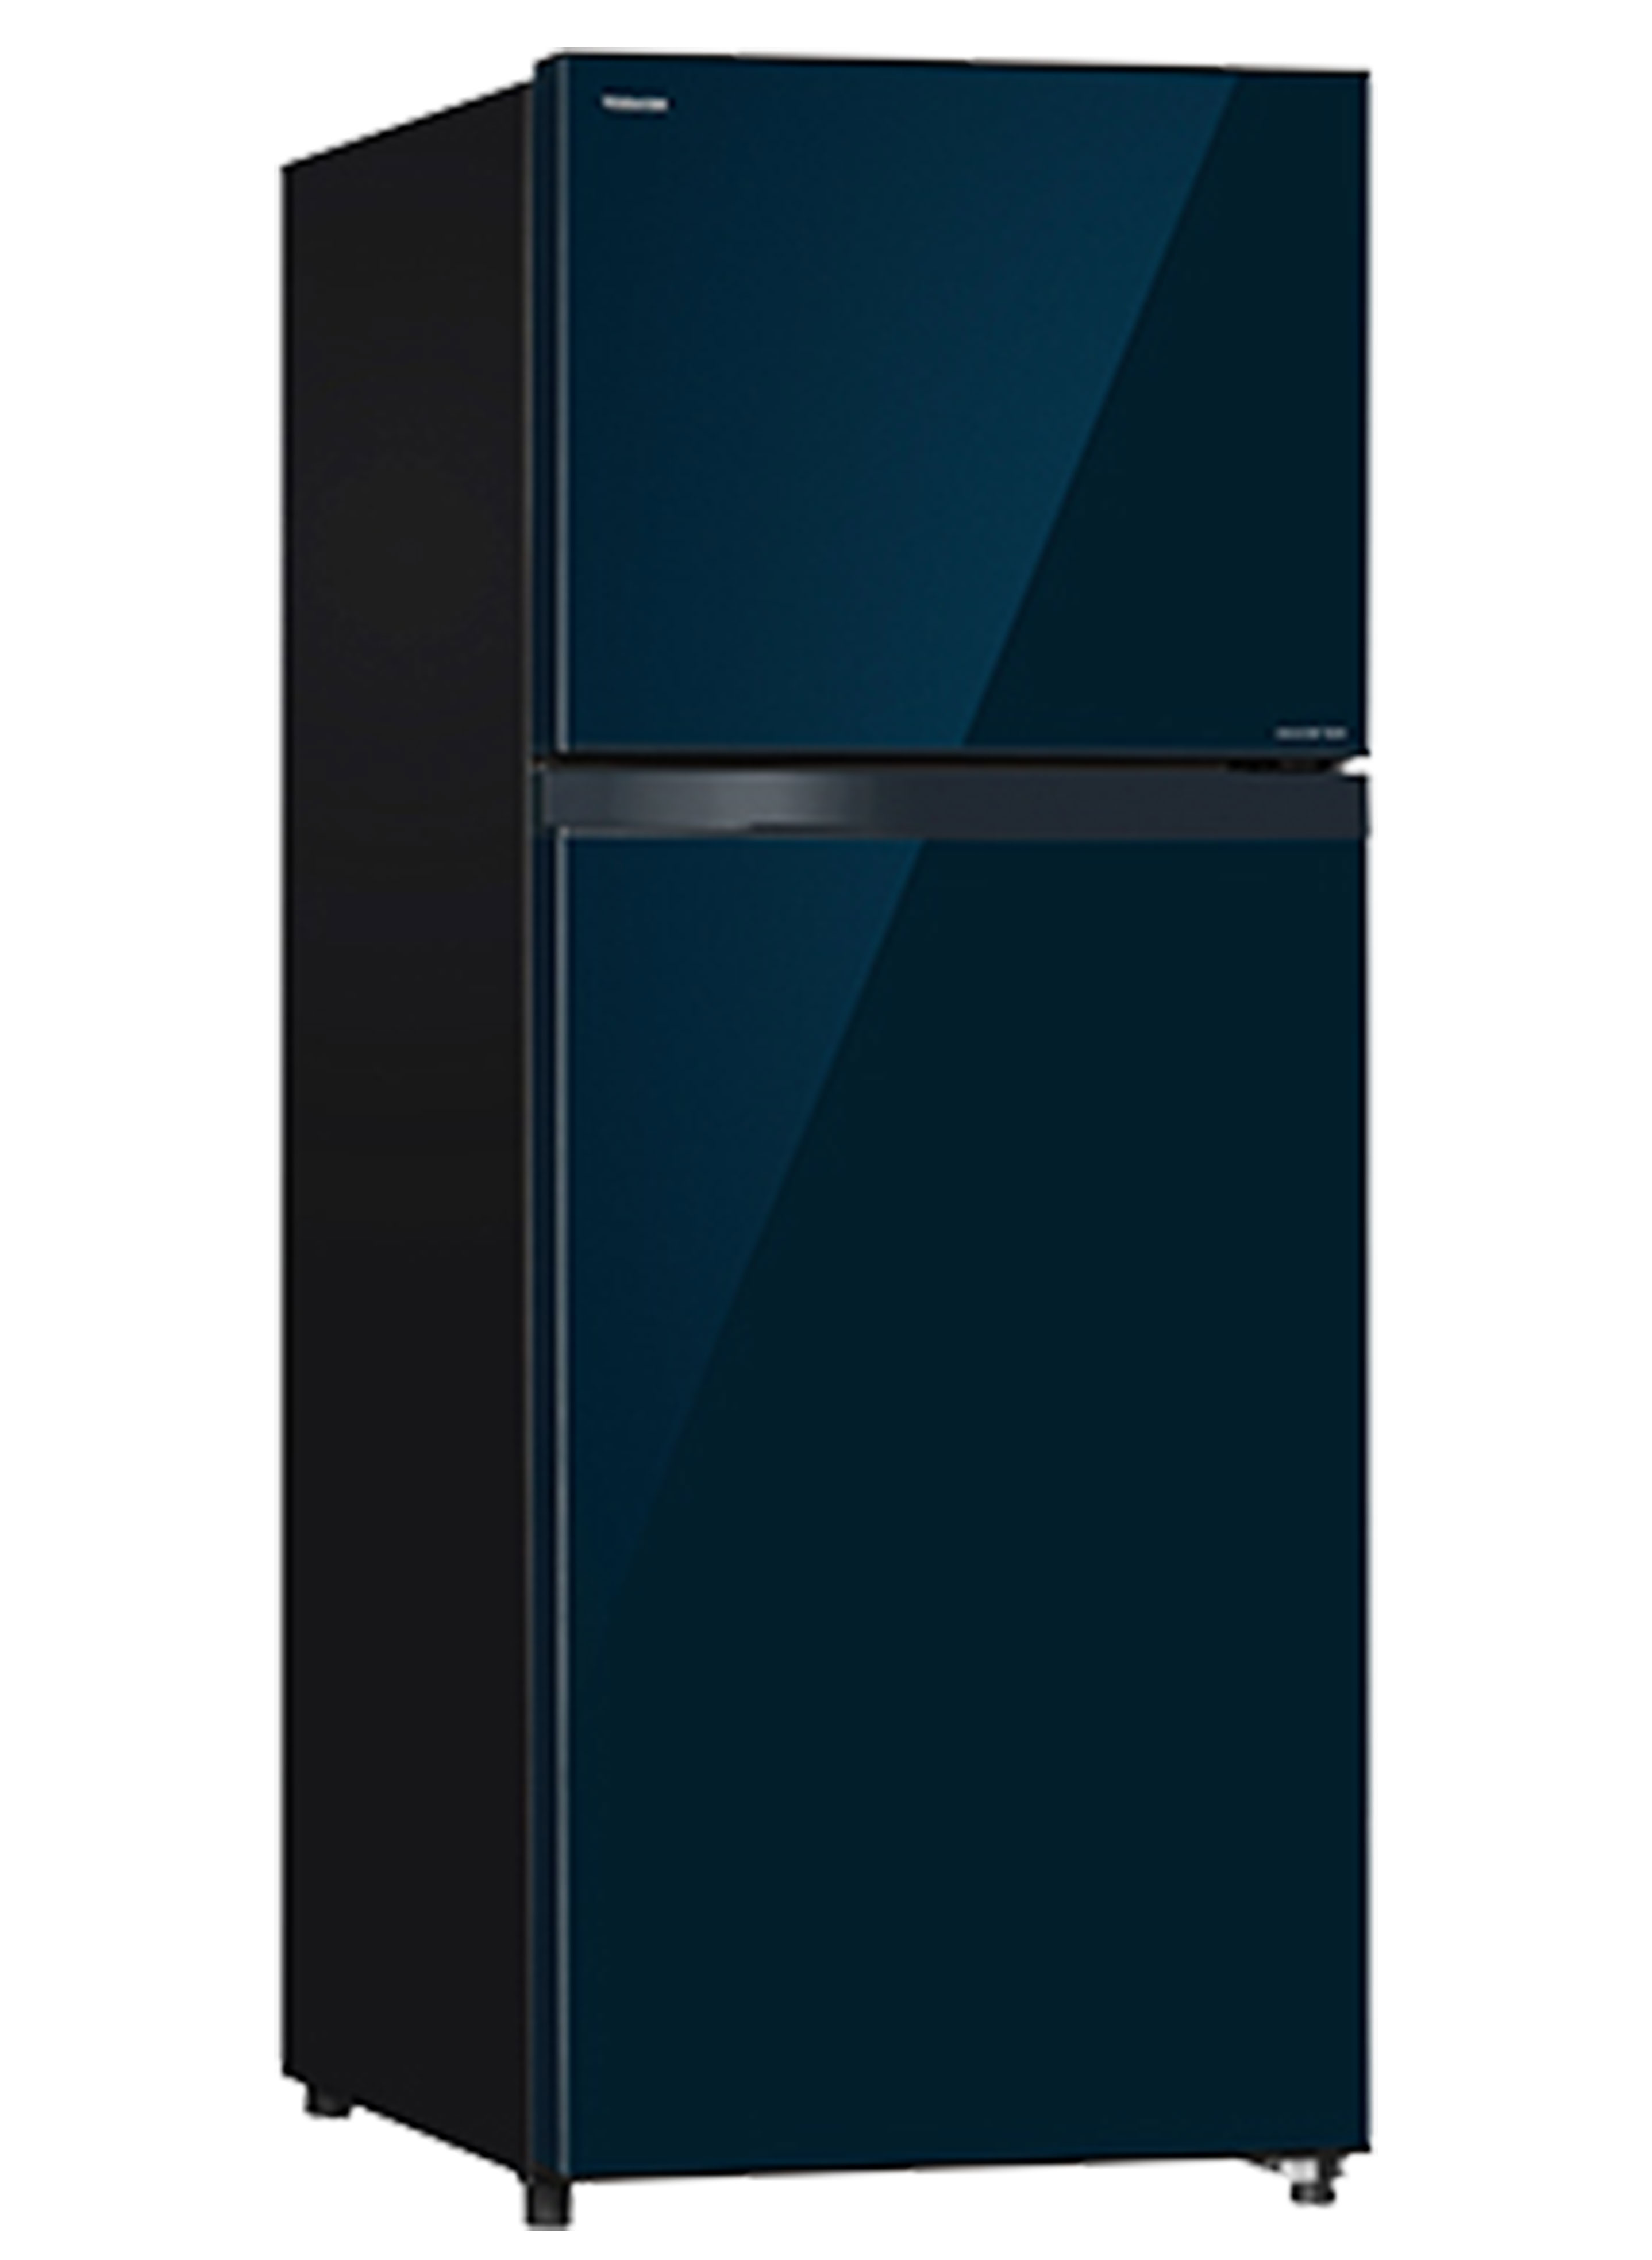 Glass Door Refrigerator Side View